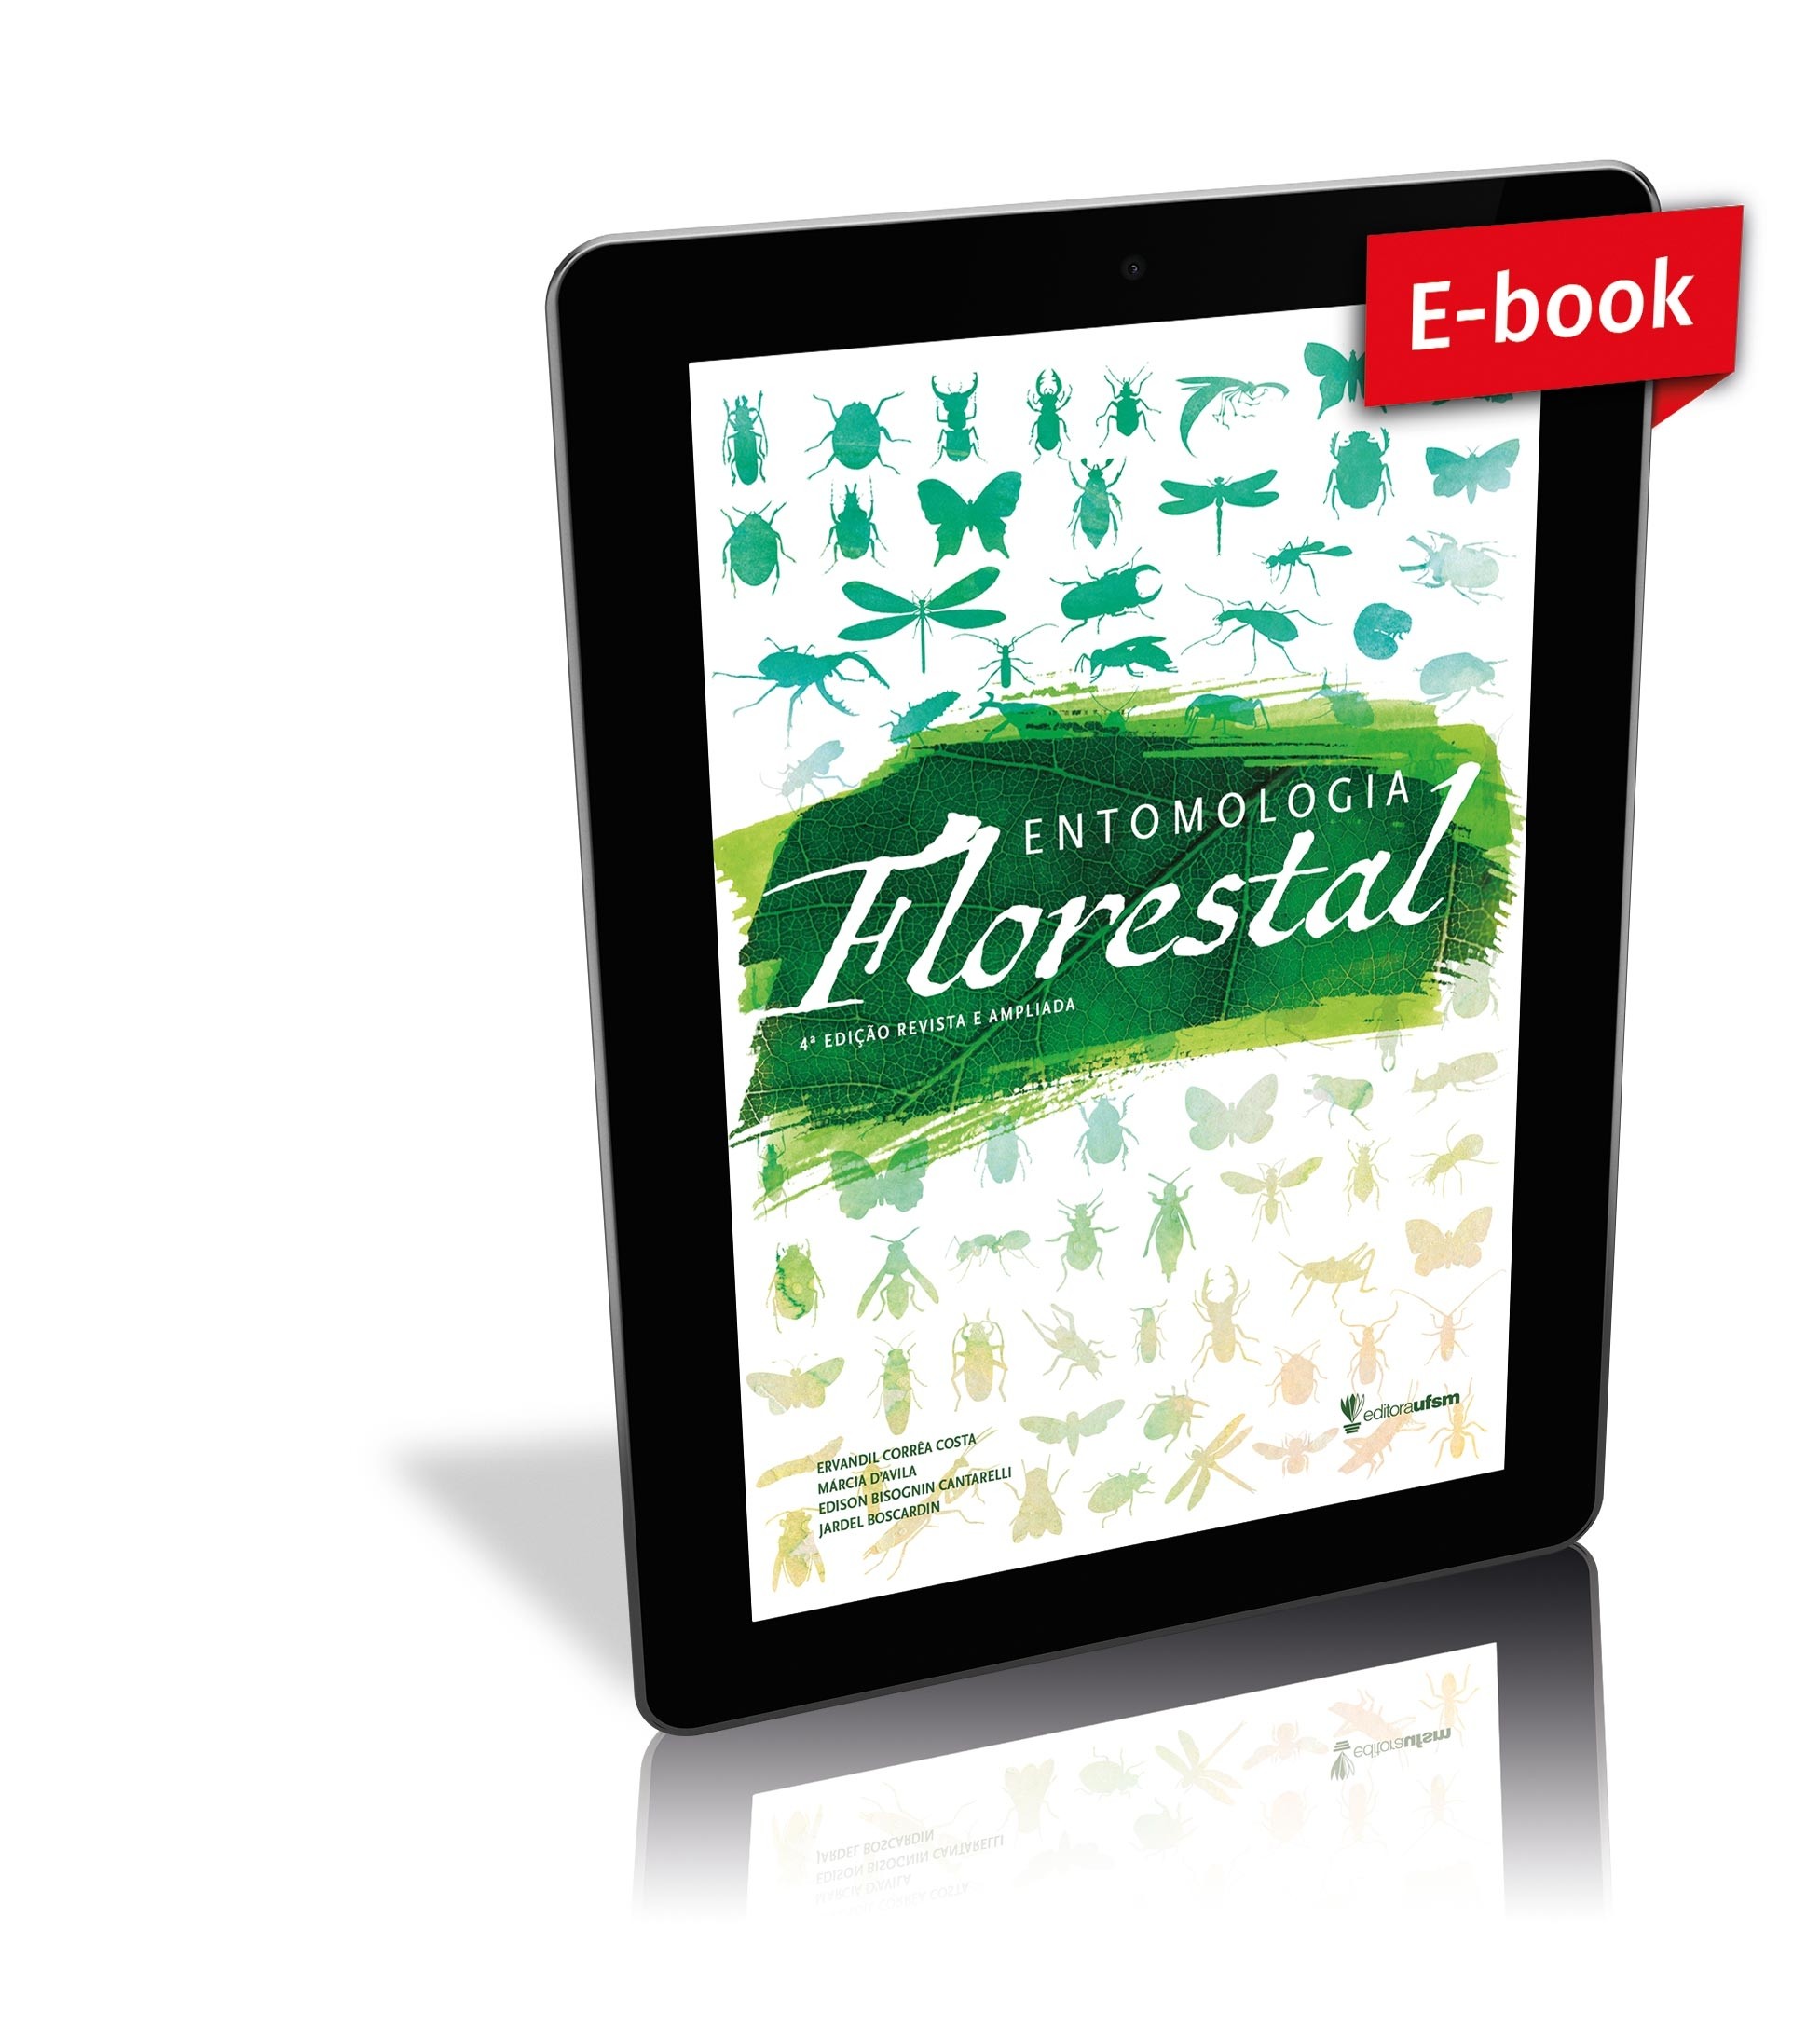 Saiba mais sobre o e-book Entomologia Florestal 4ª edição revista e ampliada